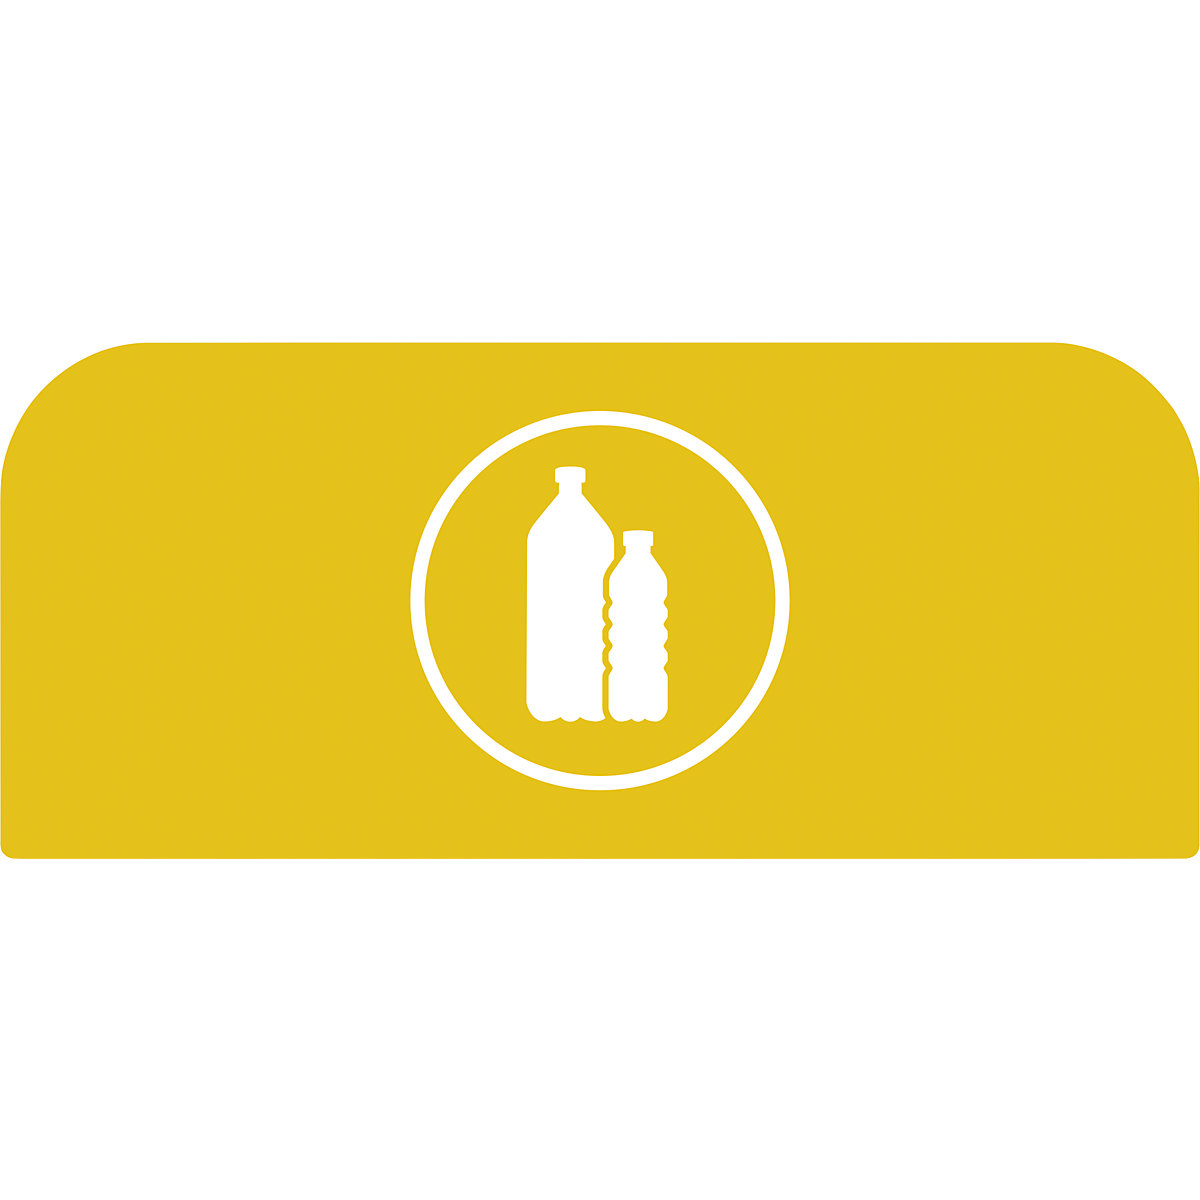 Hinweistafel Configure™ Rubbermaid, für 87-l-Behälter, gelb